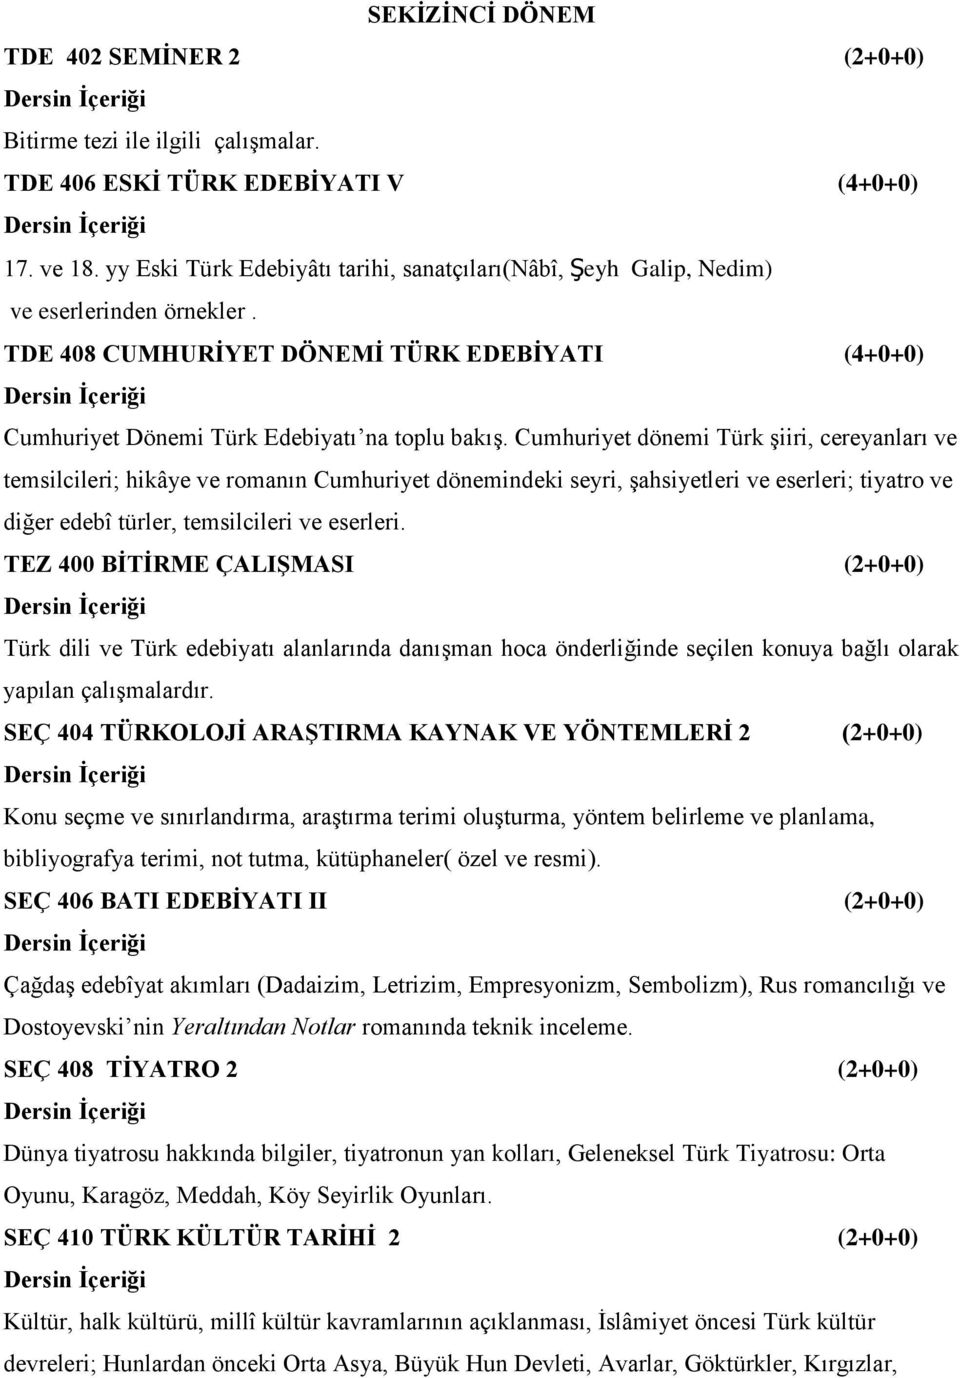 Cumhuriyet dönemi Türk şiiri, cereyanları ve temsilcileri; hikâye ve romanın Cumhuriyet dönemindeki seyri, şahsiyetleri ve eserleri; tiyatro ve diğer edebî türler, temsilcileri ve eserleri.